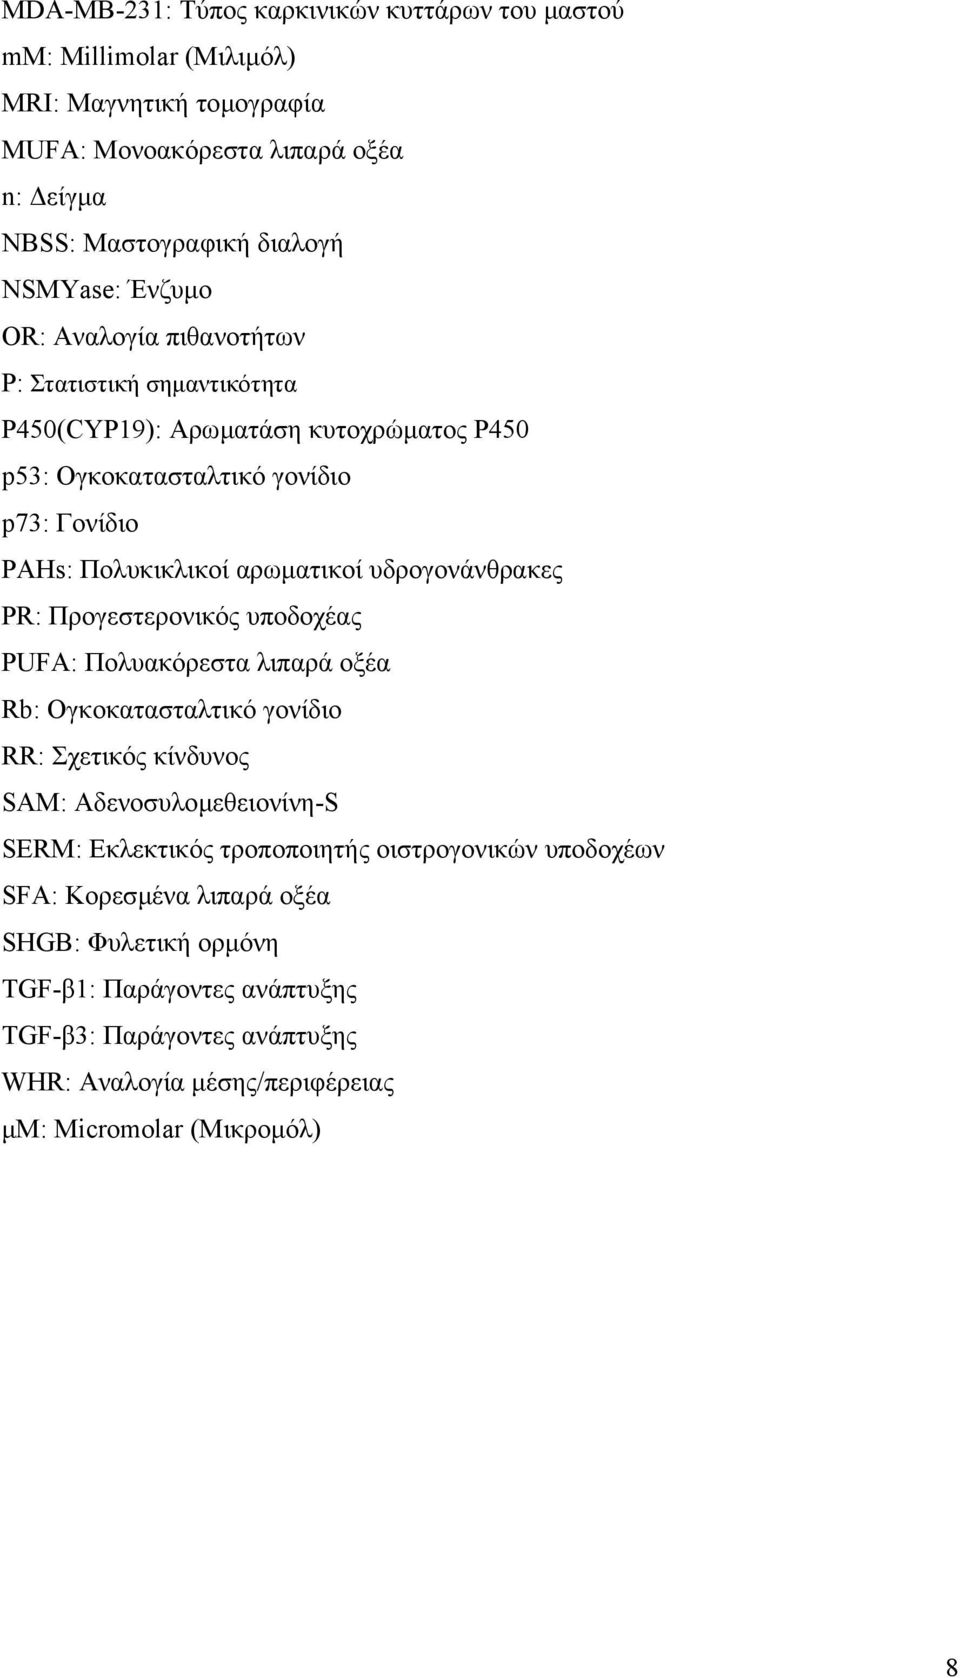 υδρογονάνθρακες PR: Προγεστερονικός υποδοχέας PUFA: Πολυακόρεστα λιπαρά οξέα Rb: Ογκοκατασταλτικό γονίδιο RR: Σχετικός κίνδυνος SAM: Αδενοσυλοµεθειονίνη-S SERM: Εκλεκτικός